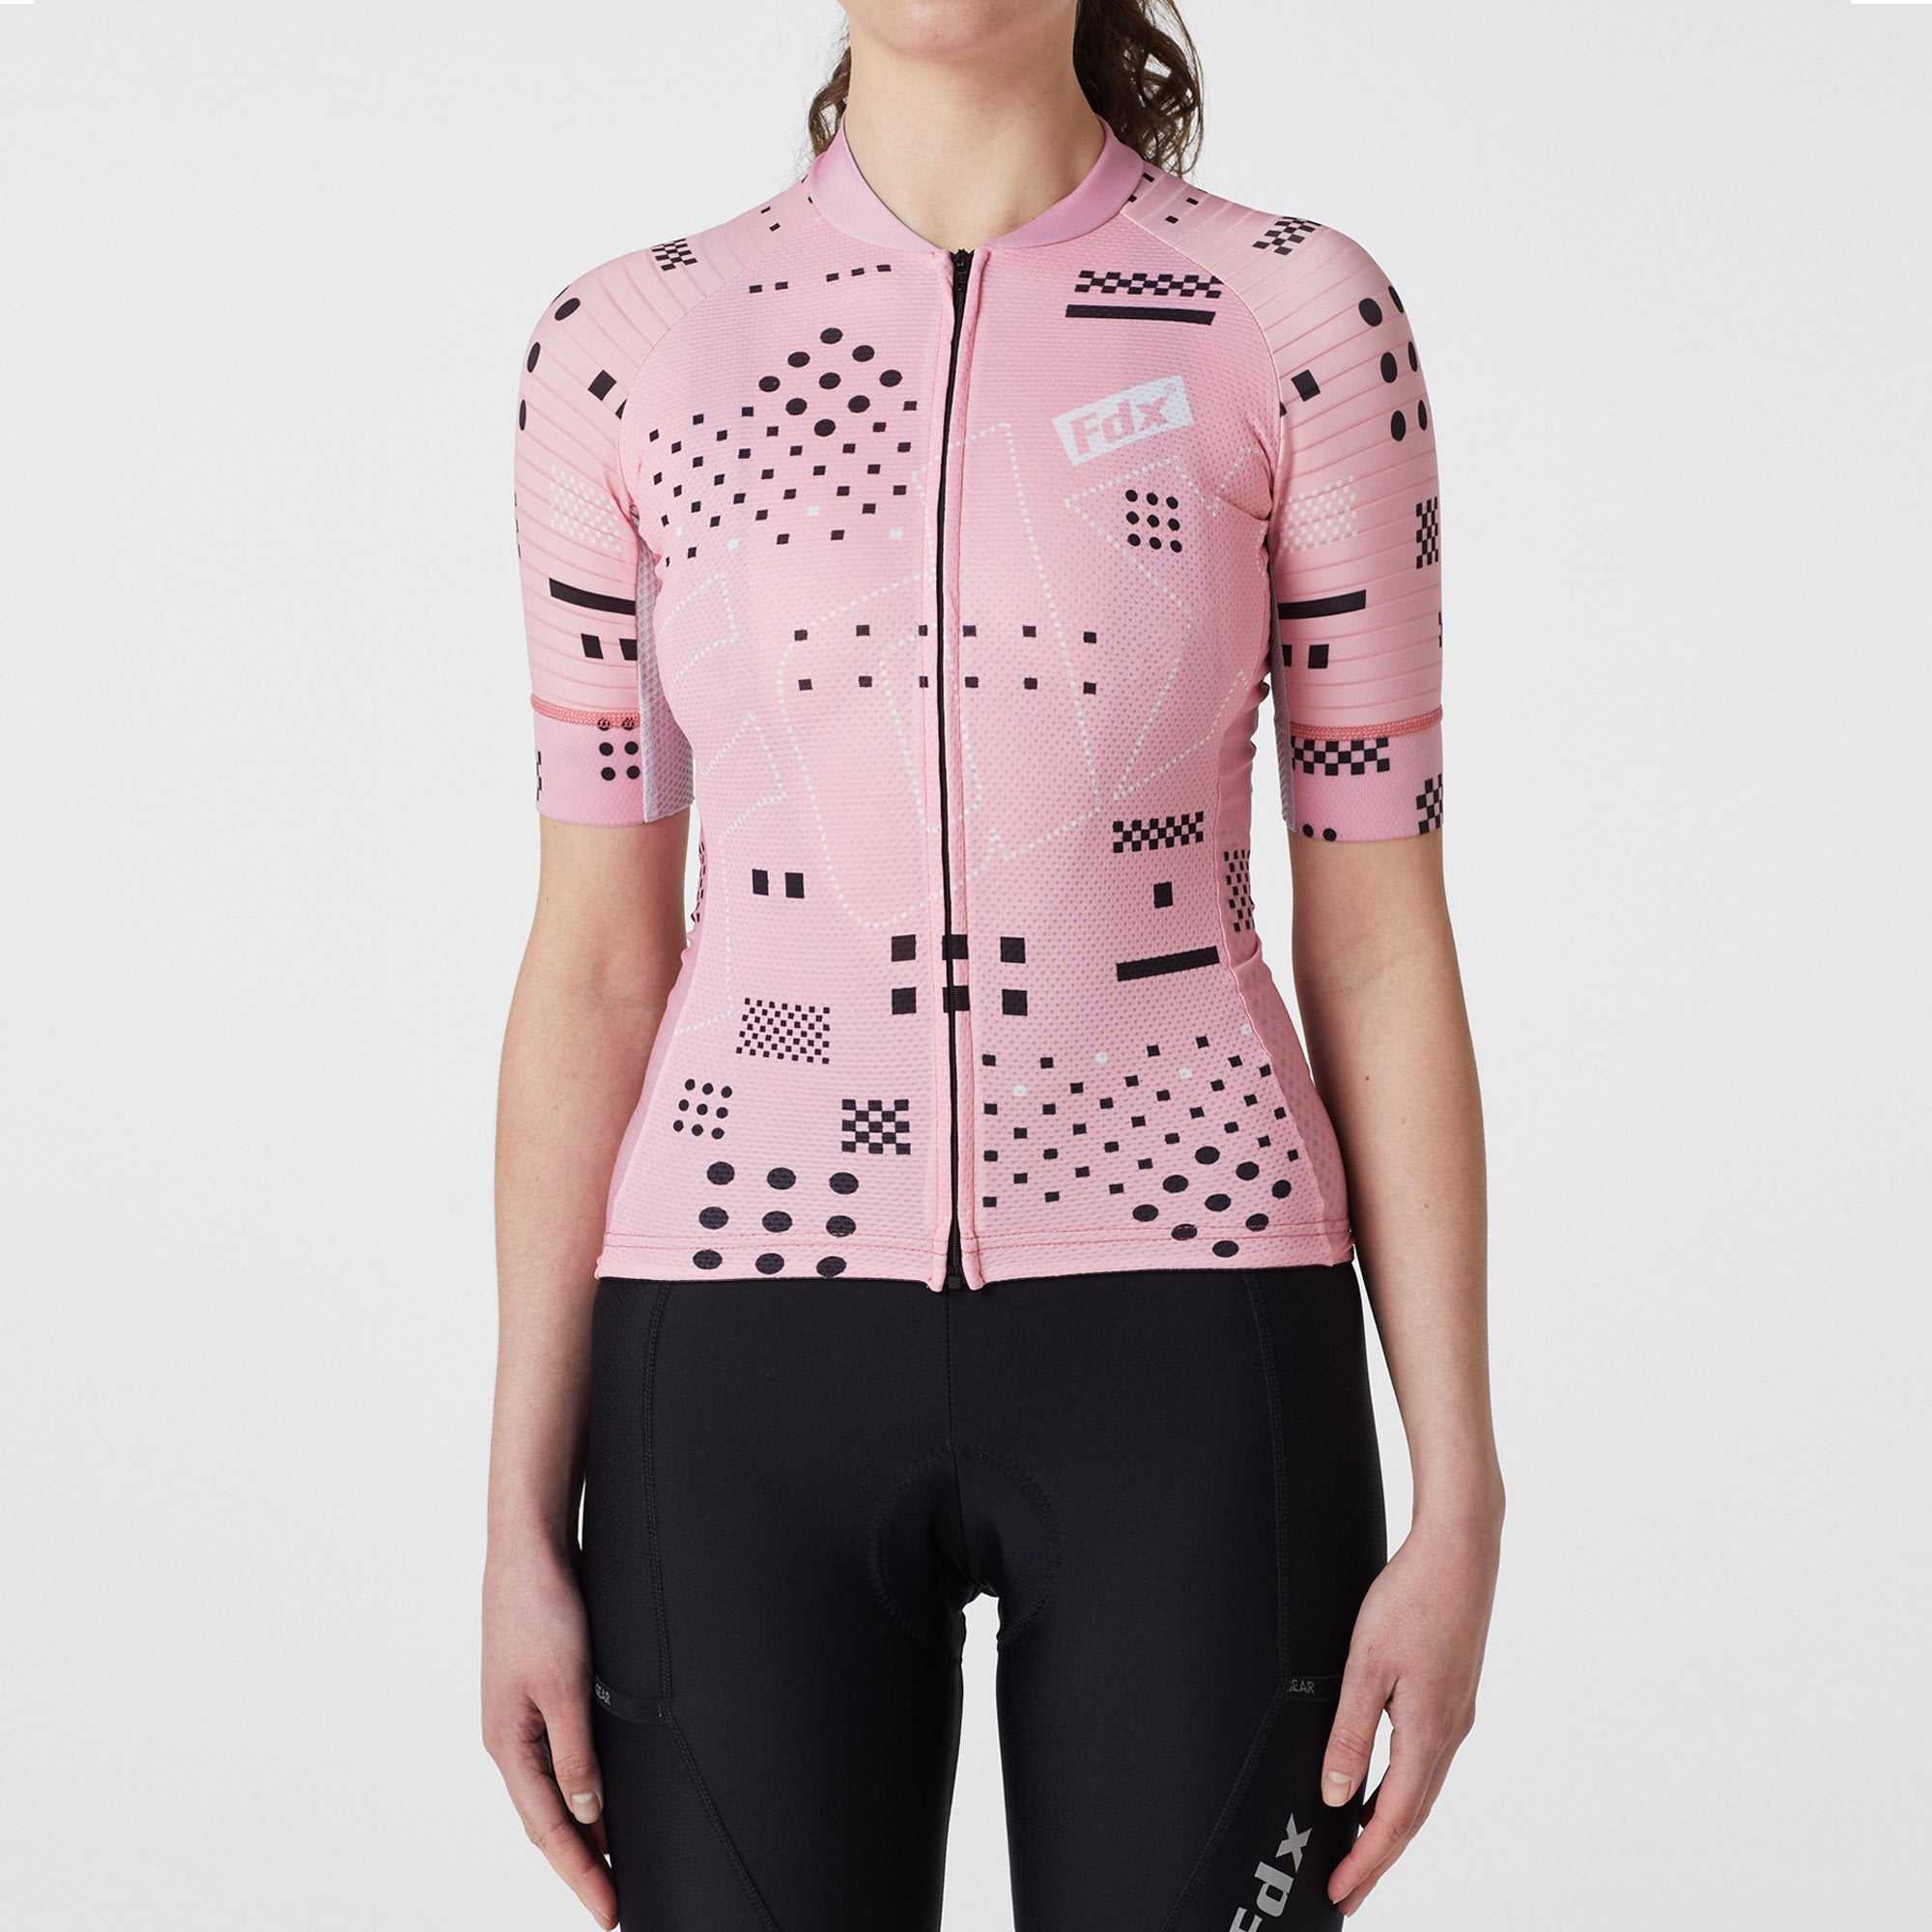 Fdx All Day Tea Pink Women's Summer Short Sleeve Cycling Jersey